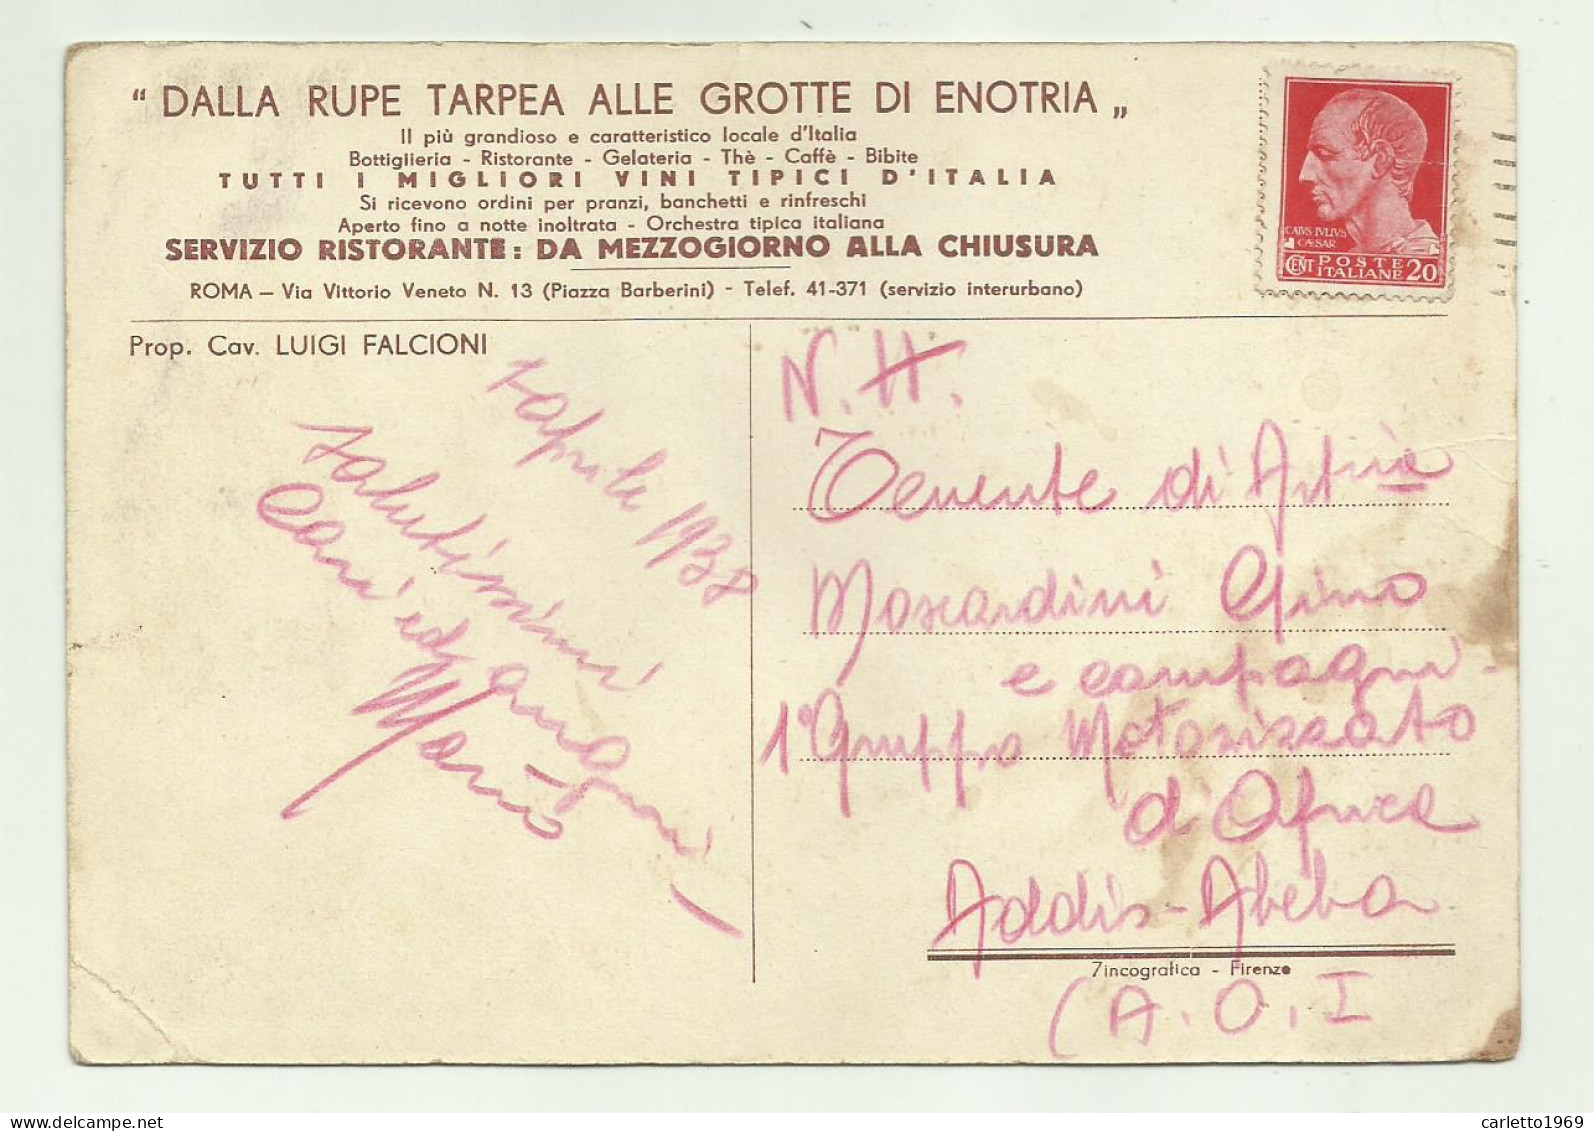 DALLA RUPE TARPEA ALLE GROTTE DI ENOTRIA 1938 - VIAGGIATA FG - Bar, Alberghi & Ristoranti